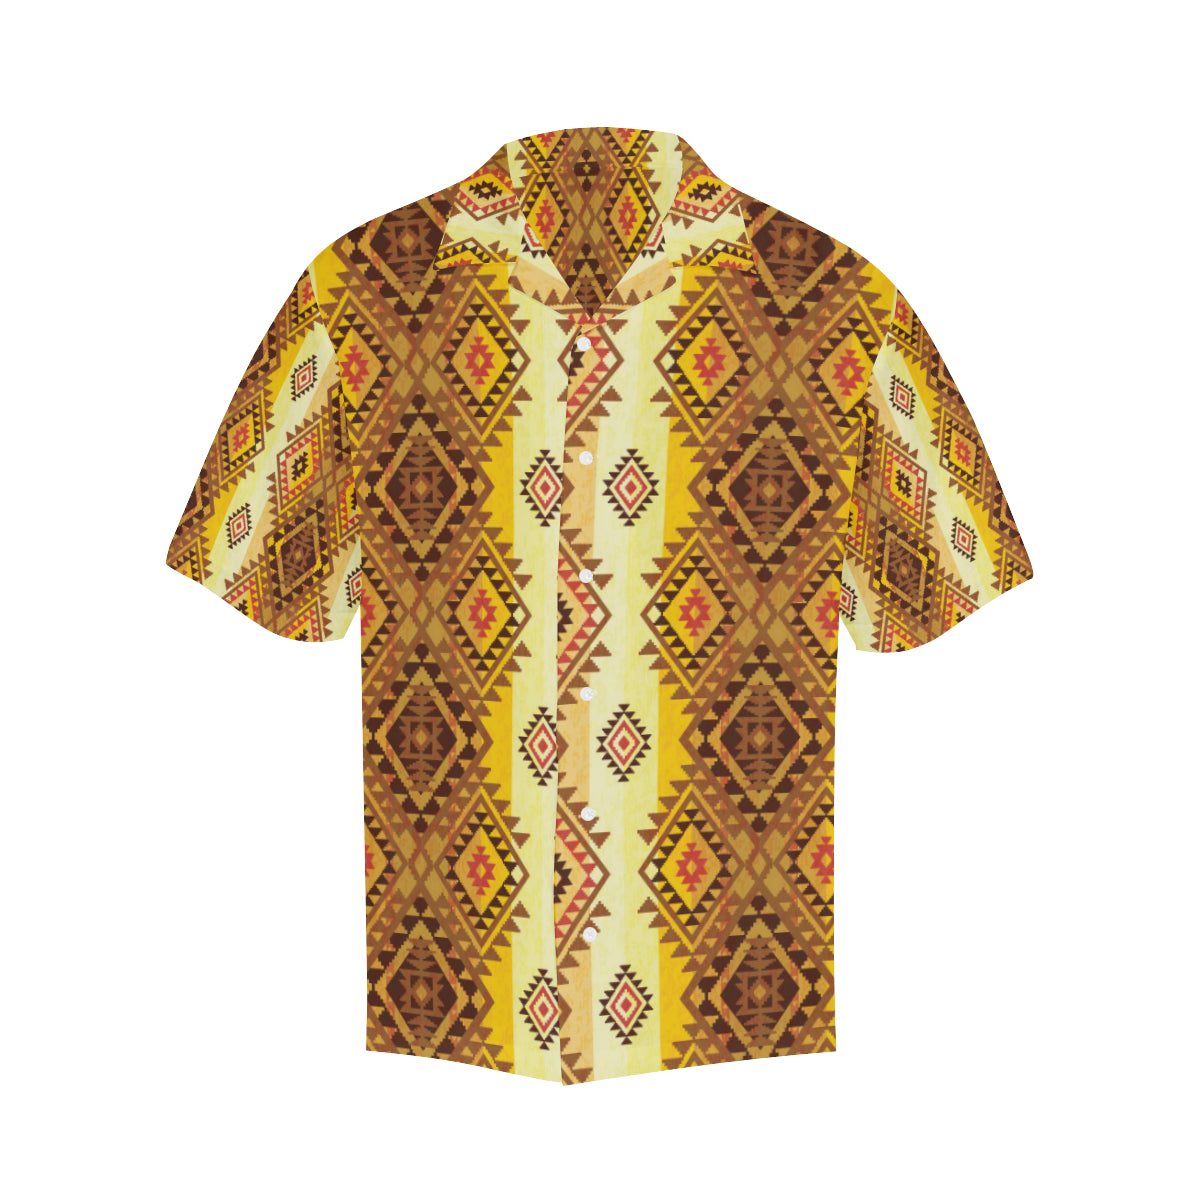 Native Pattern Print Design A09 Men's Hawaiian Shirt - JorJune